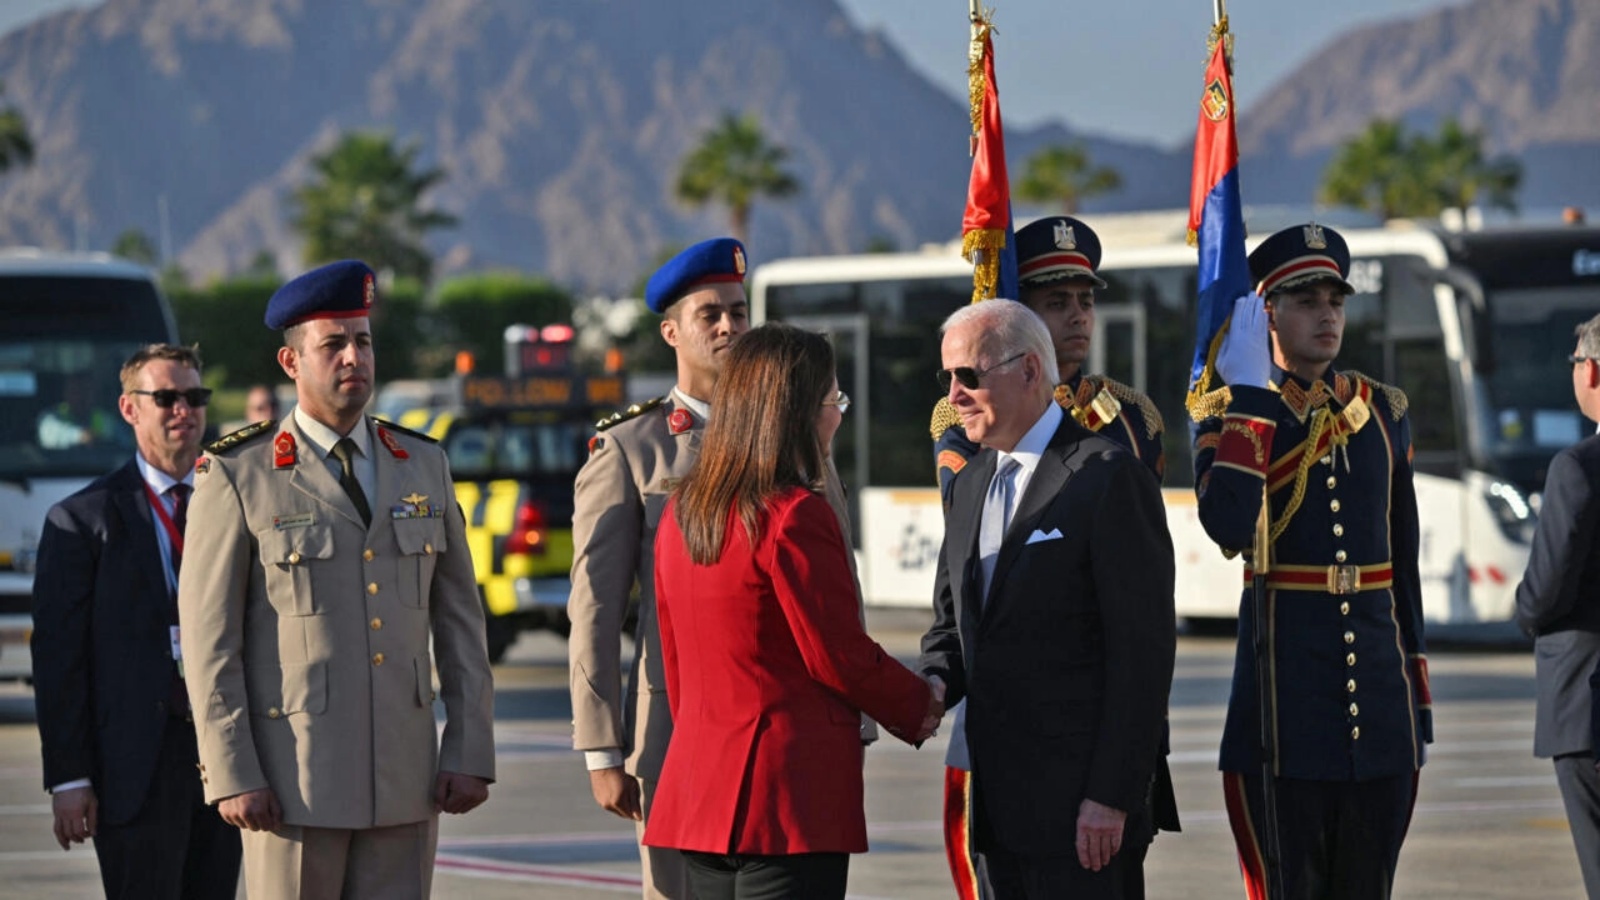 استقبال الرئيس الأميركي جو بايدن لدى وصوله إلى مطار شرم الشيخ المصري المطل على البحر الأحمر لحضور مؤتمر المناخ COP27، مصر، في 11 نوفمبر 2022.